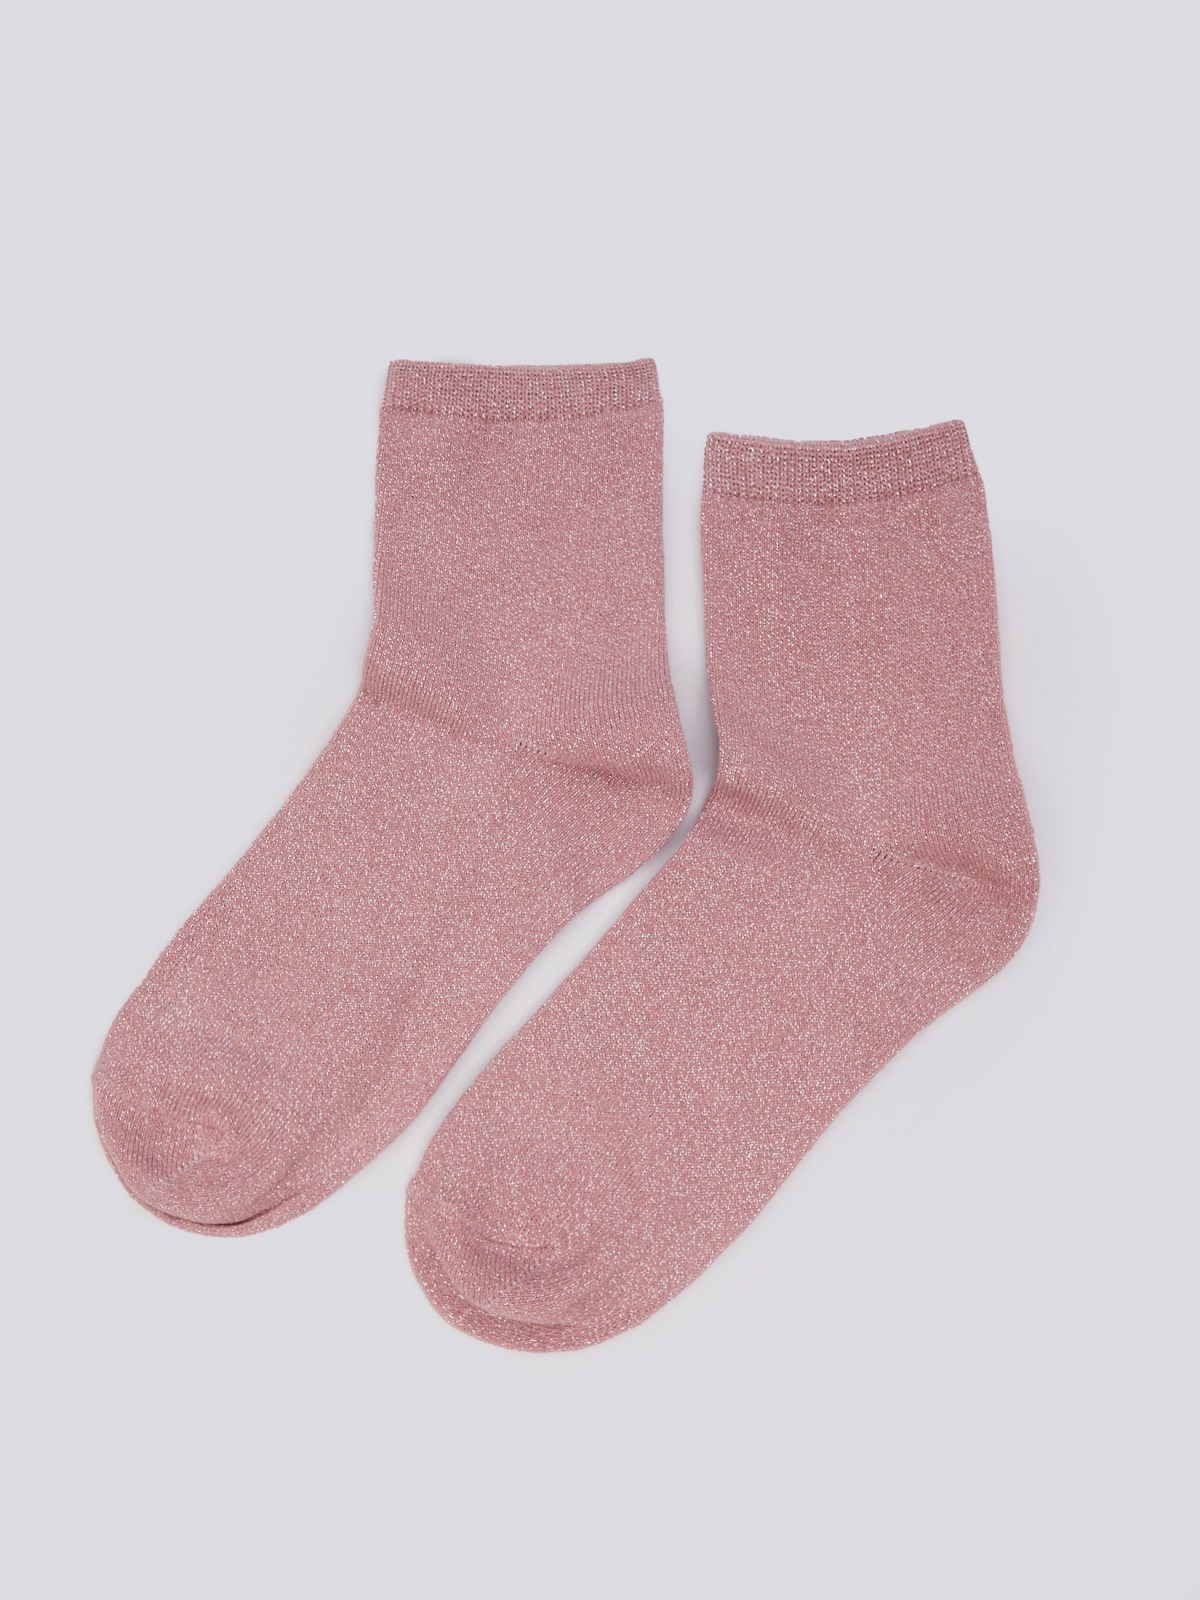 Набор носков с люрексом (3 пары в комплекте) zolla 024119962035, цвет розовый, размер 23-25 - фото 3